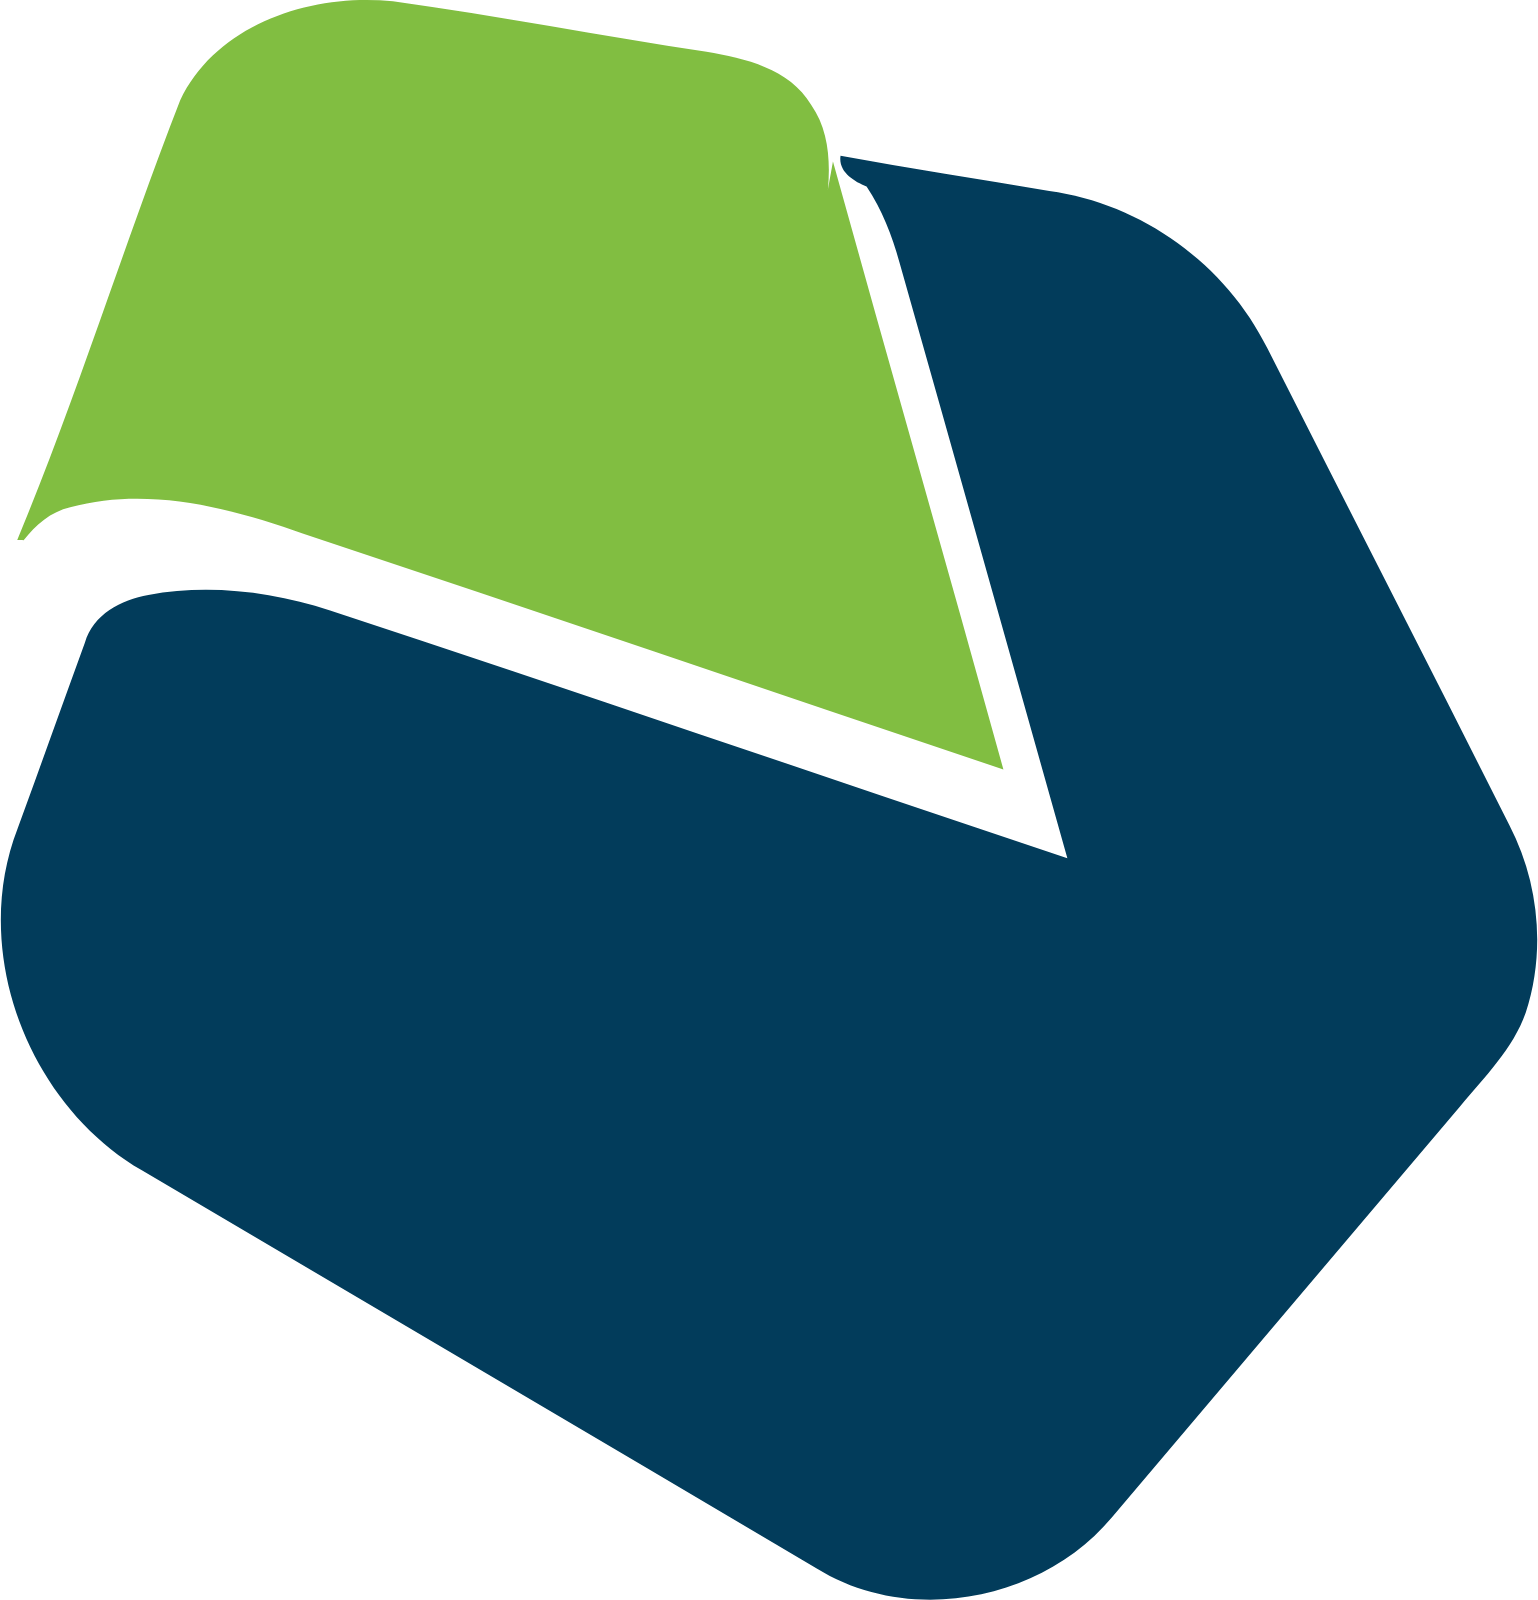 Vanda Pharmaceuticals logo (transparent PNG)